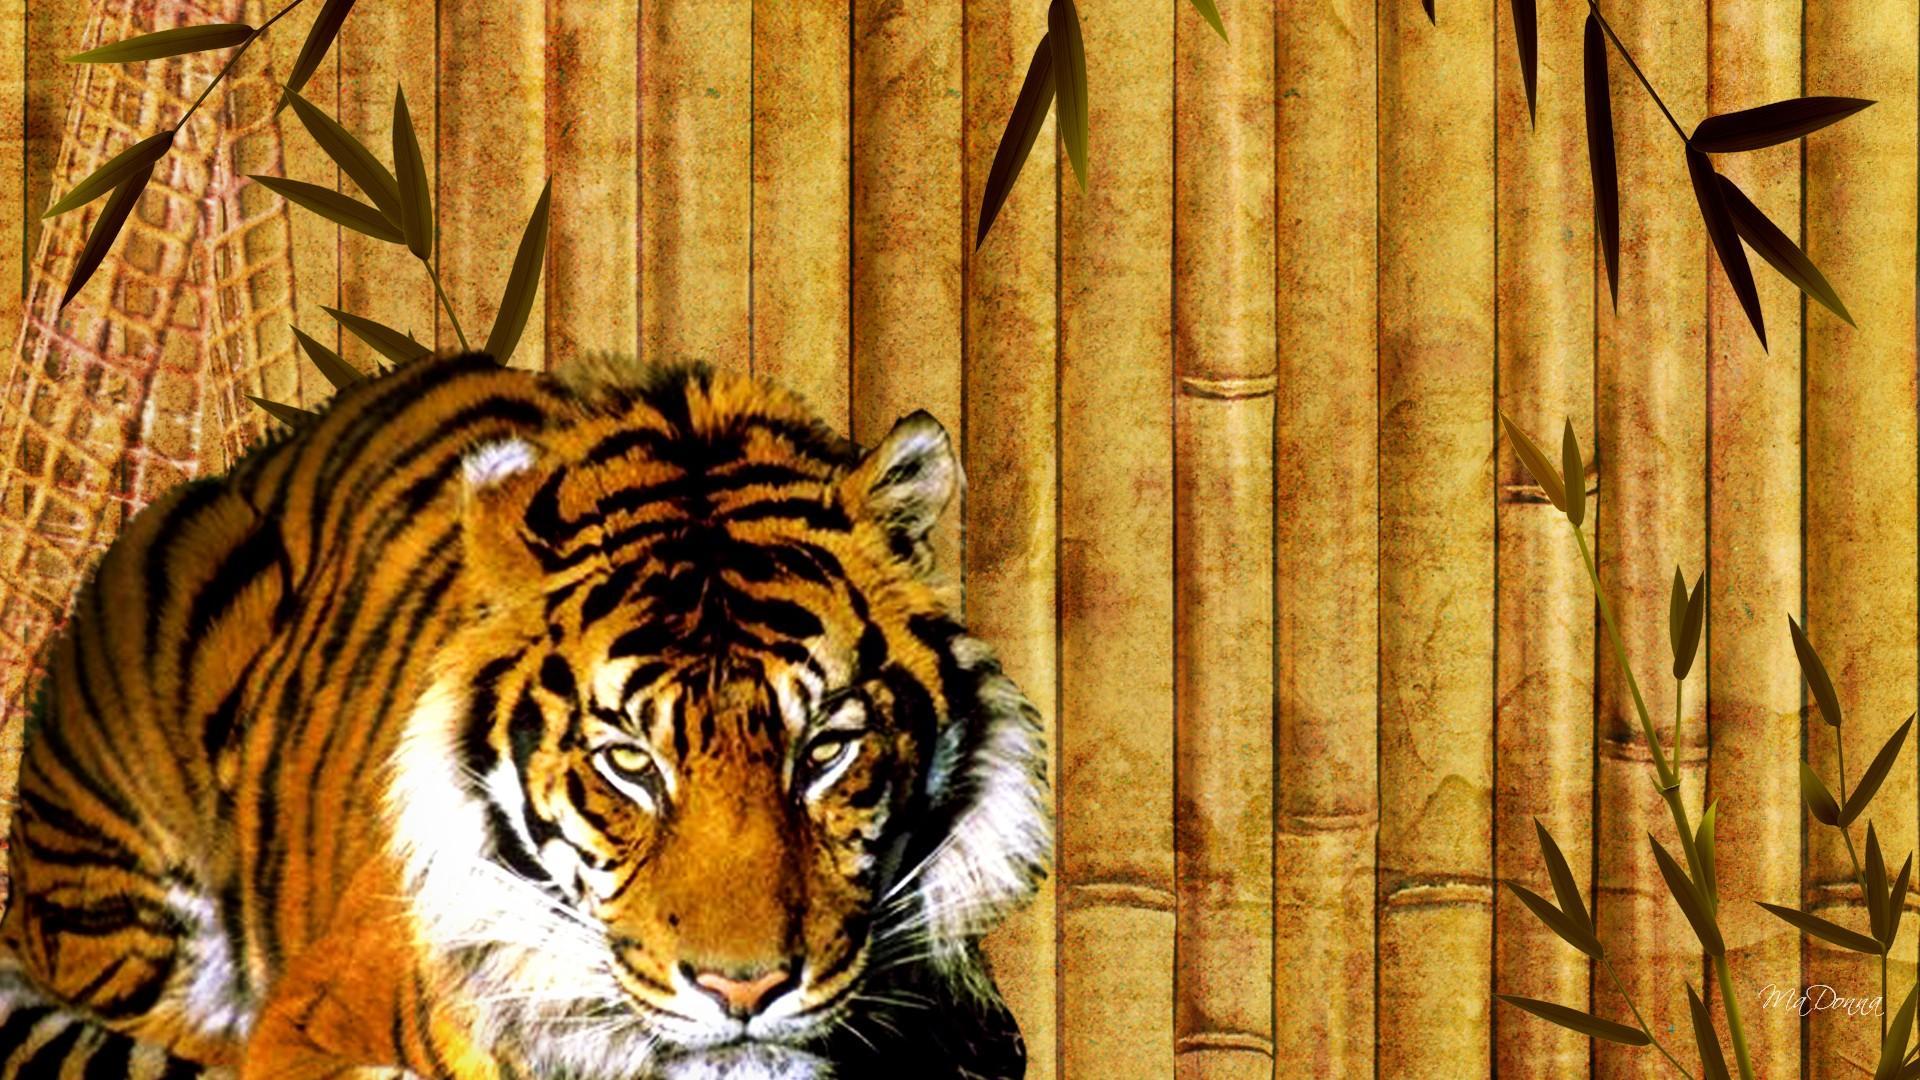 Bamboo Tiger - Tigre No Bambu , HD Wallpaper & Backgrounds